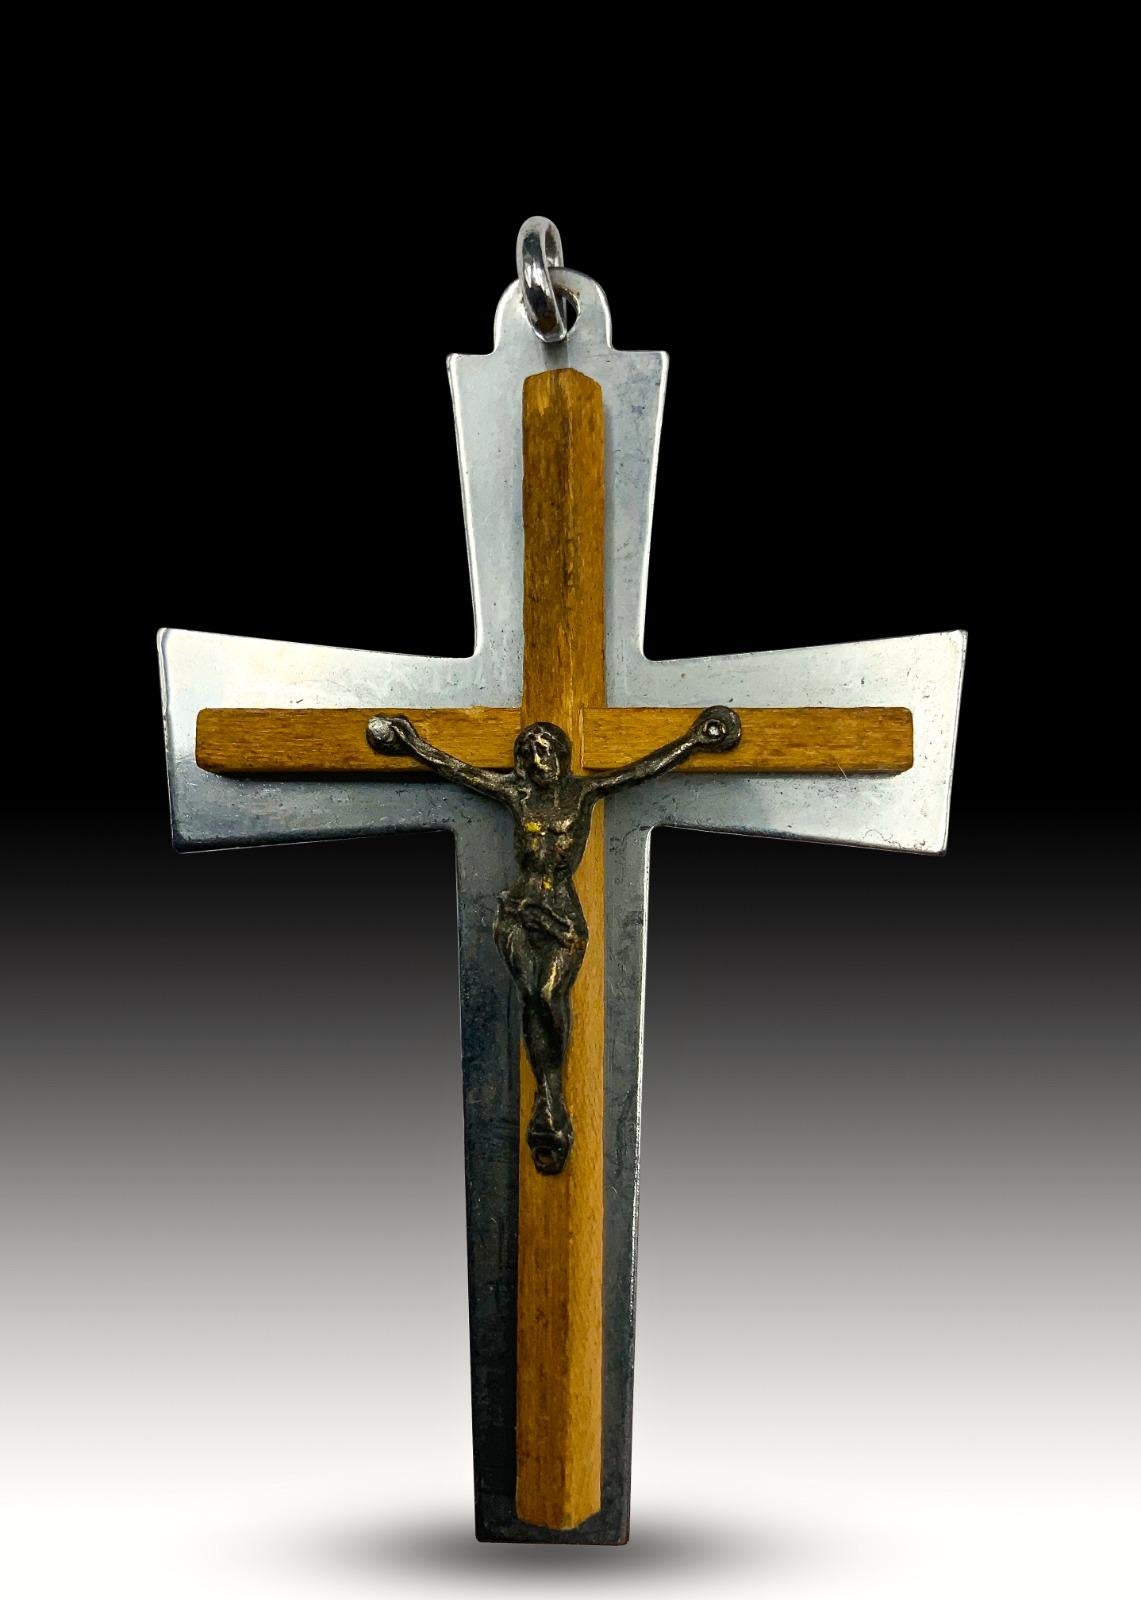 Kreuz aus dem 19. Jahrhundert.
Hergestellt aus Olivenholz und silbernem Metall. Maße: 8x5 cm.
Guter Zustand.